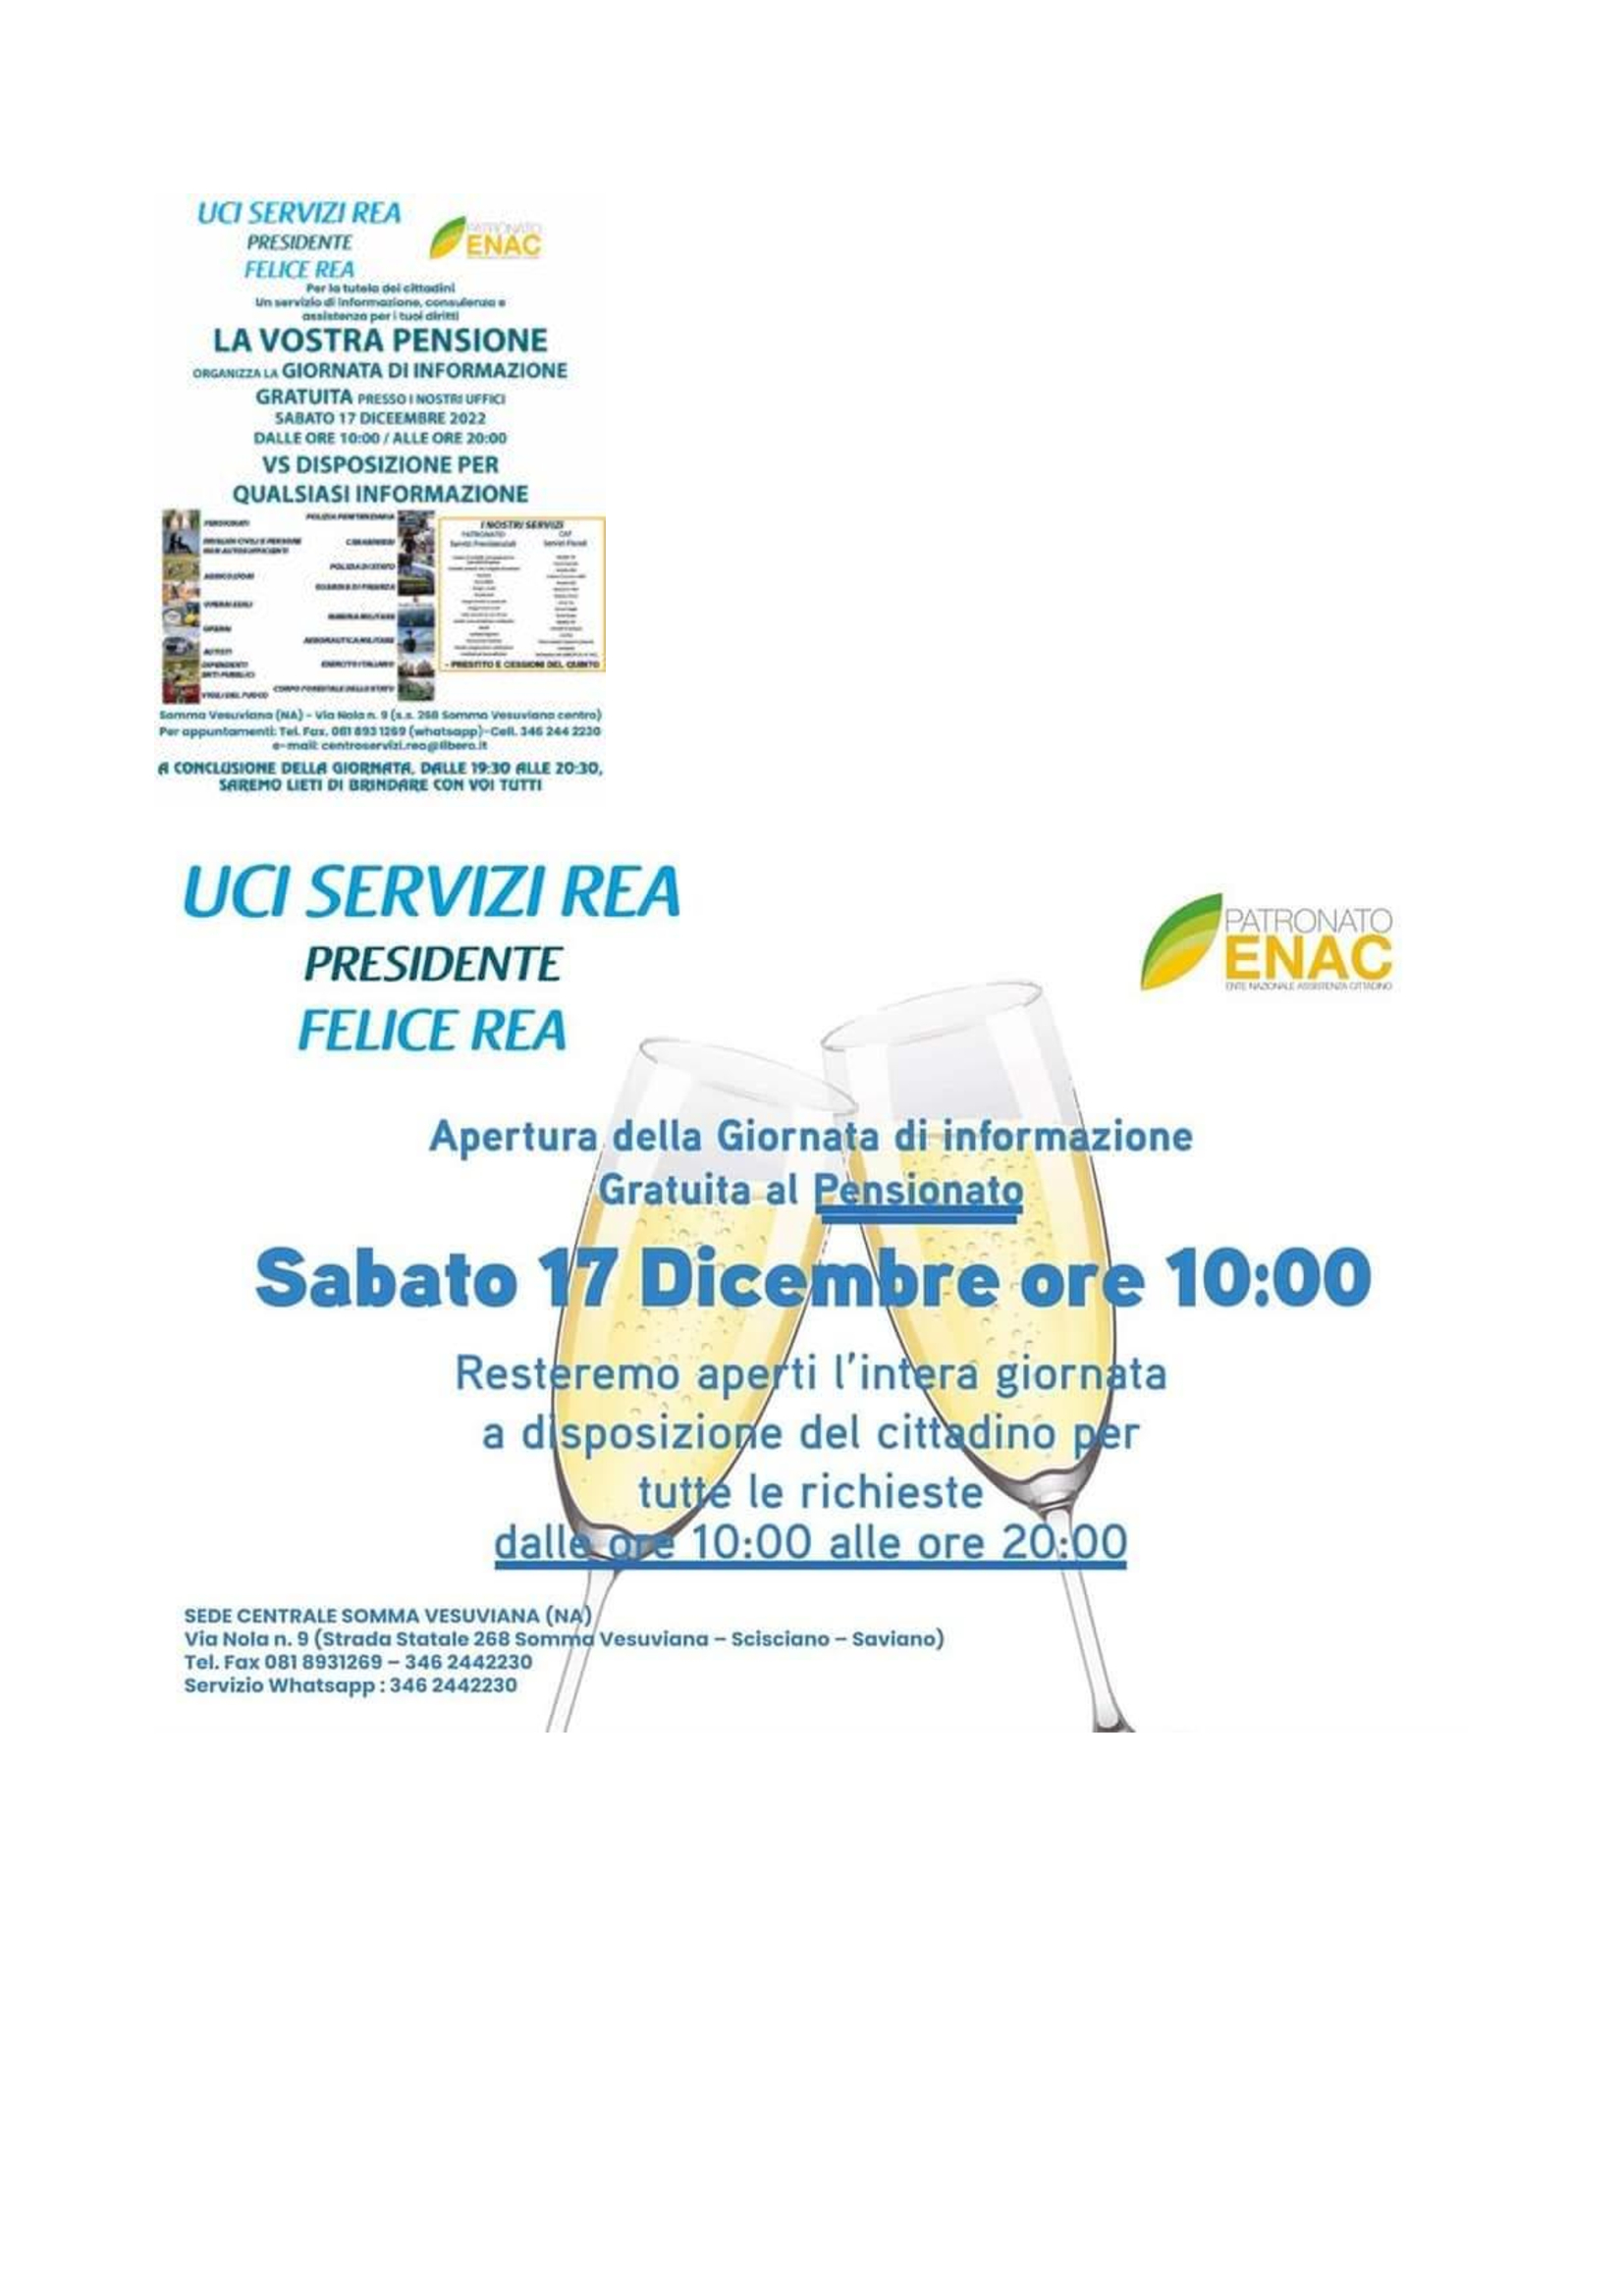 Somma Vesuviana: UCI Servizi REA, giornata d’informazione su calcolo pensione